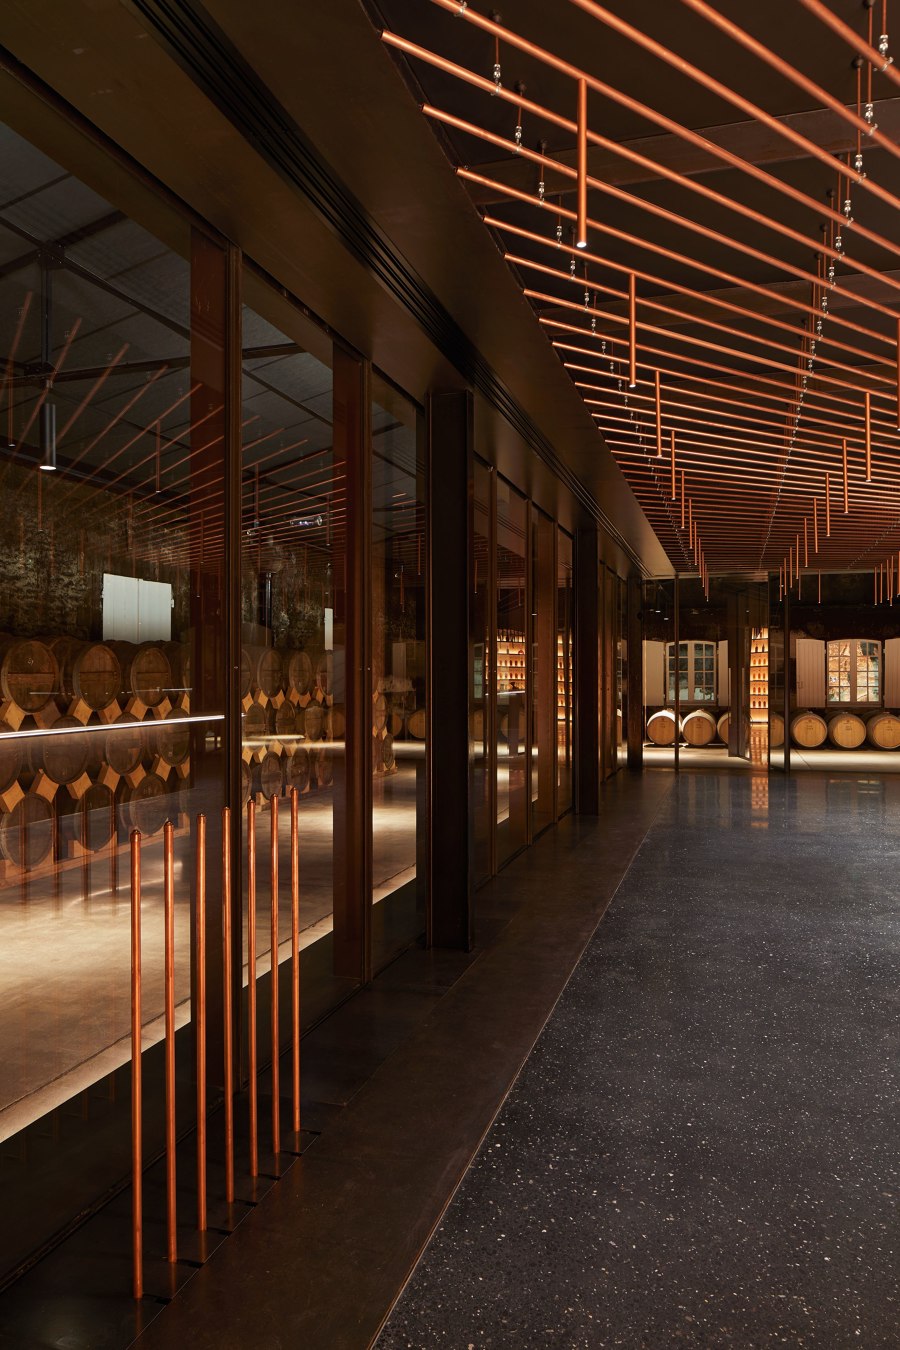 Tasting Room for Master Blenders de Elluin Duolé Gillon architecture | Intérieurs de club